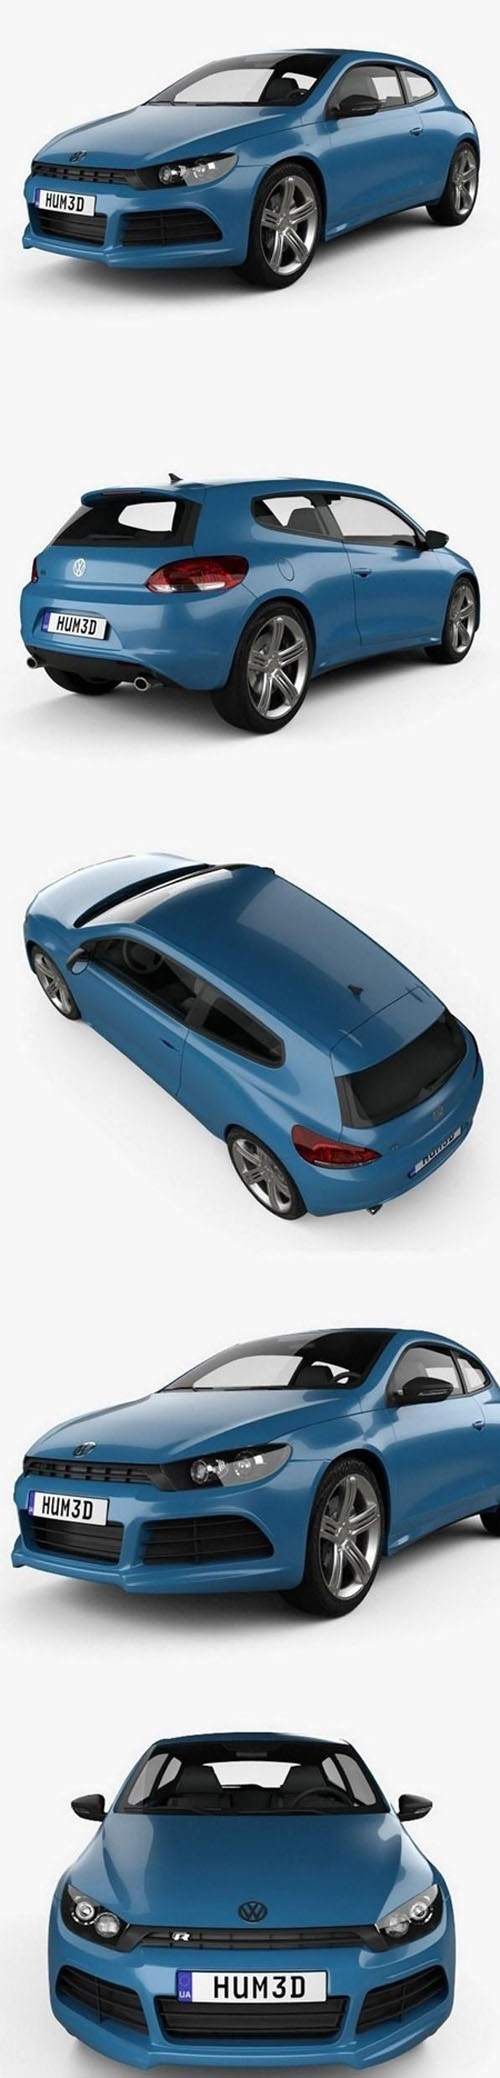 Volkswagen Scirocco R 2010 3D Model